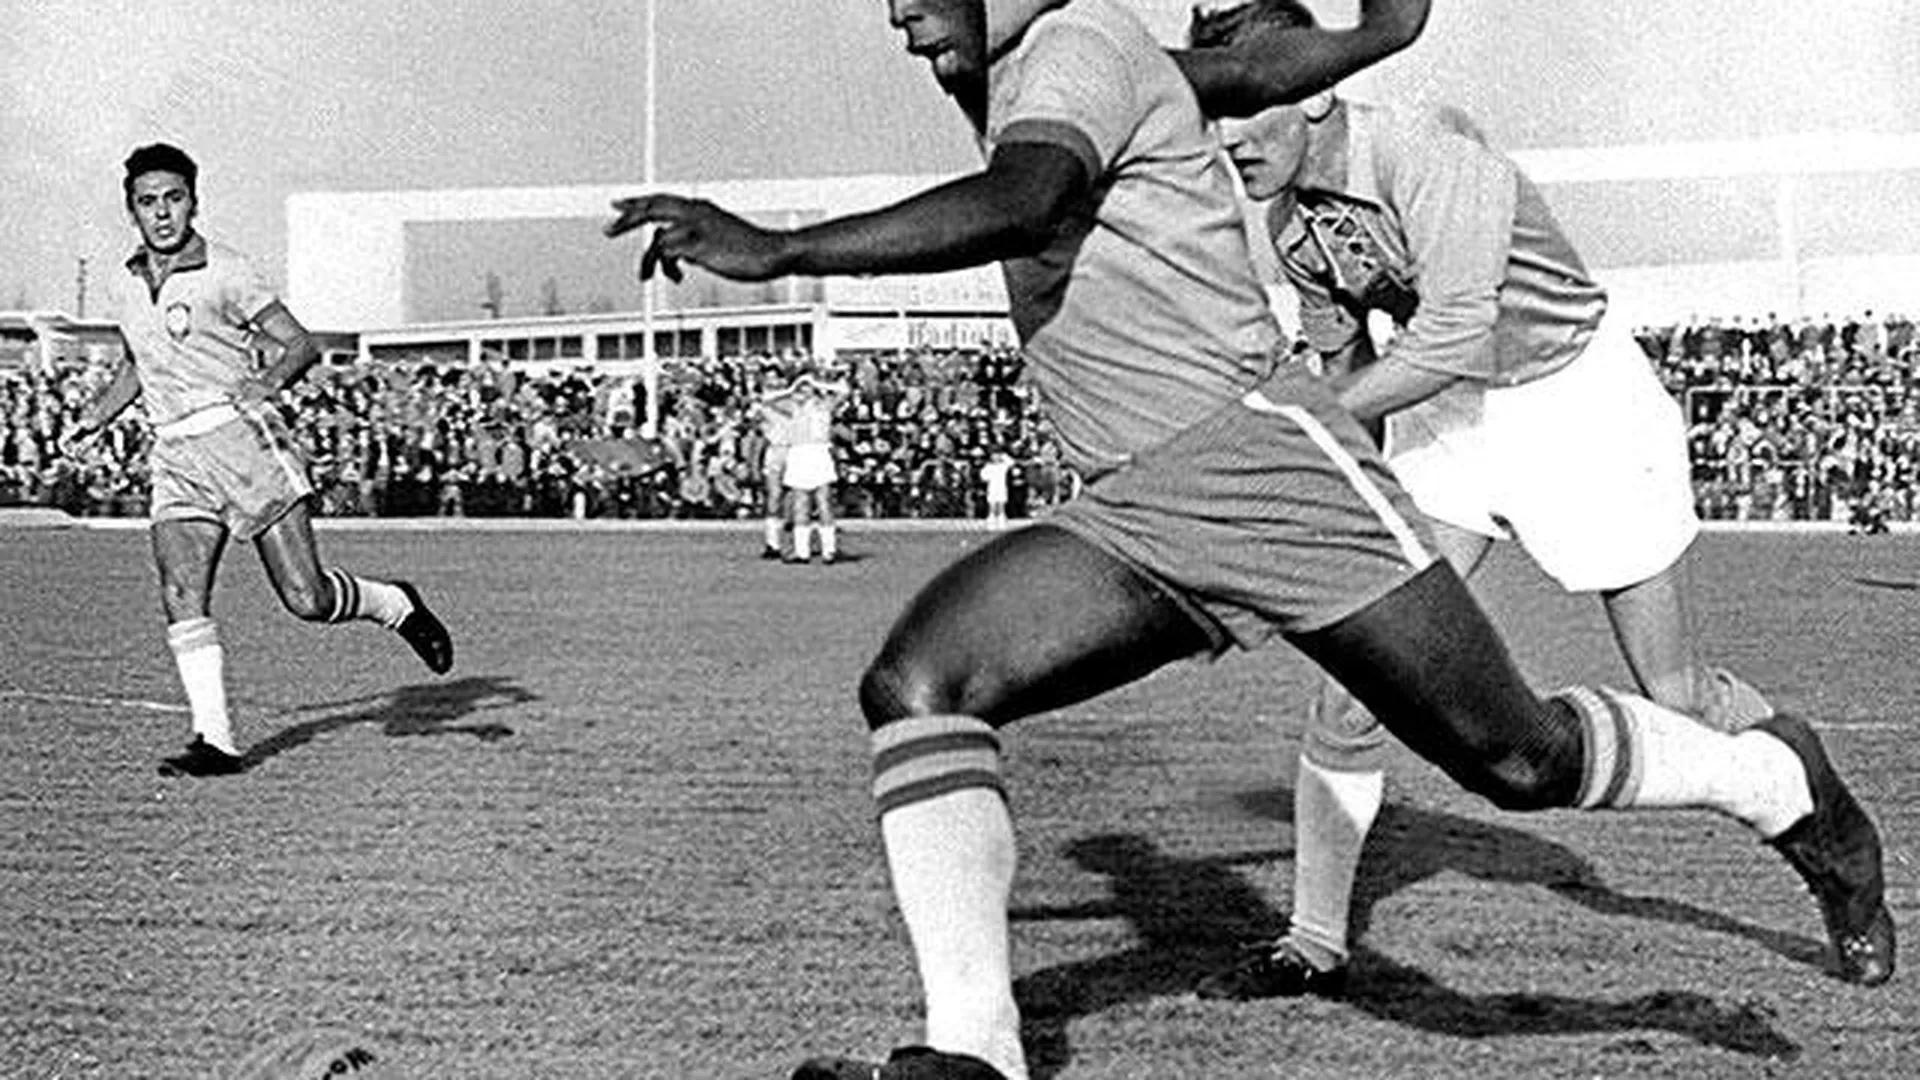 Двадцатилетний Пеле играет за сборную Бразилии товарищеский матч против шведского клуба «Мальме», 1960 год